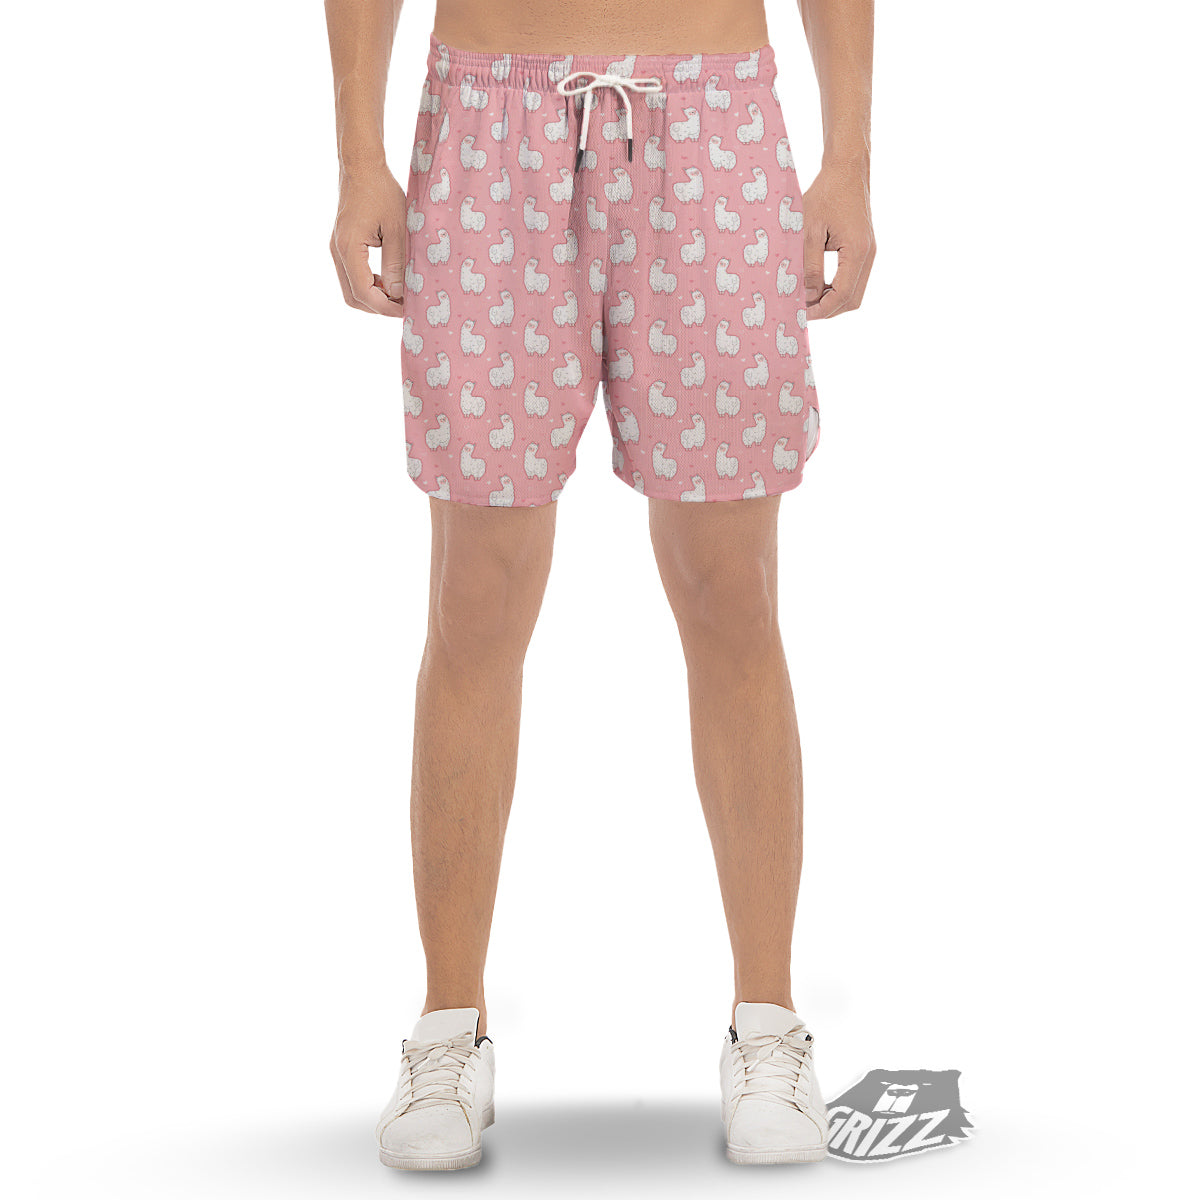 https://grizzshopping.com/cdn/shop/files/Llama-Cute-Pink-Print-Pattern-Mens-Gym-Shorts.jpg?v=1691236134